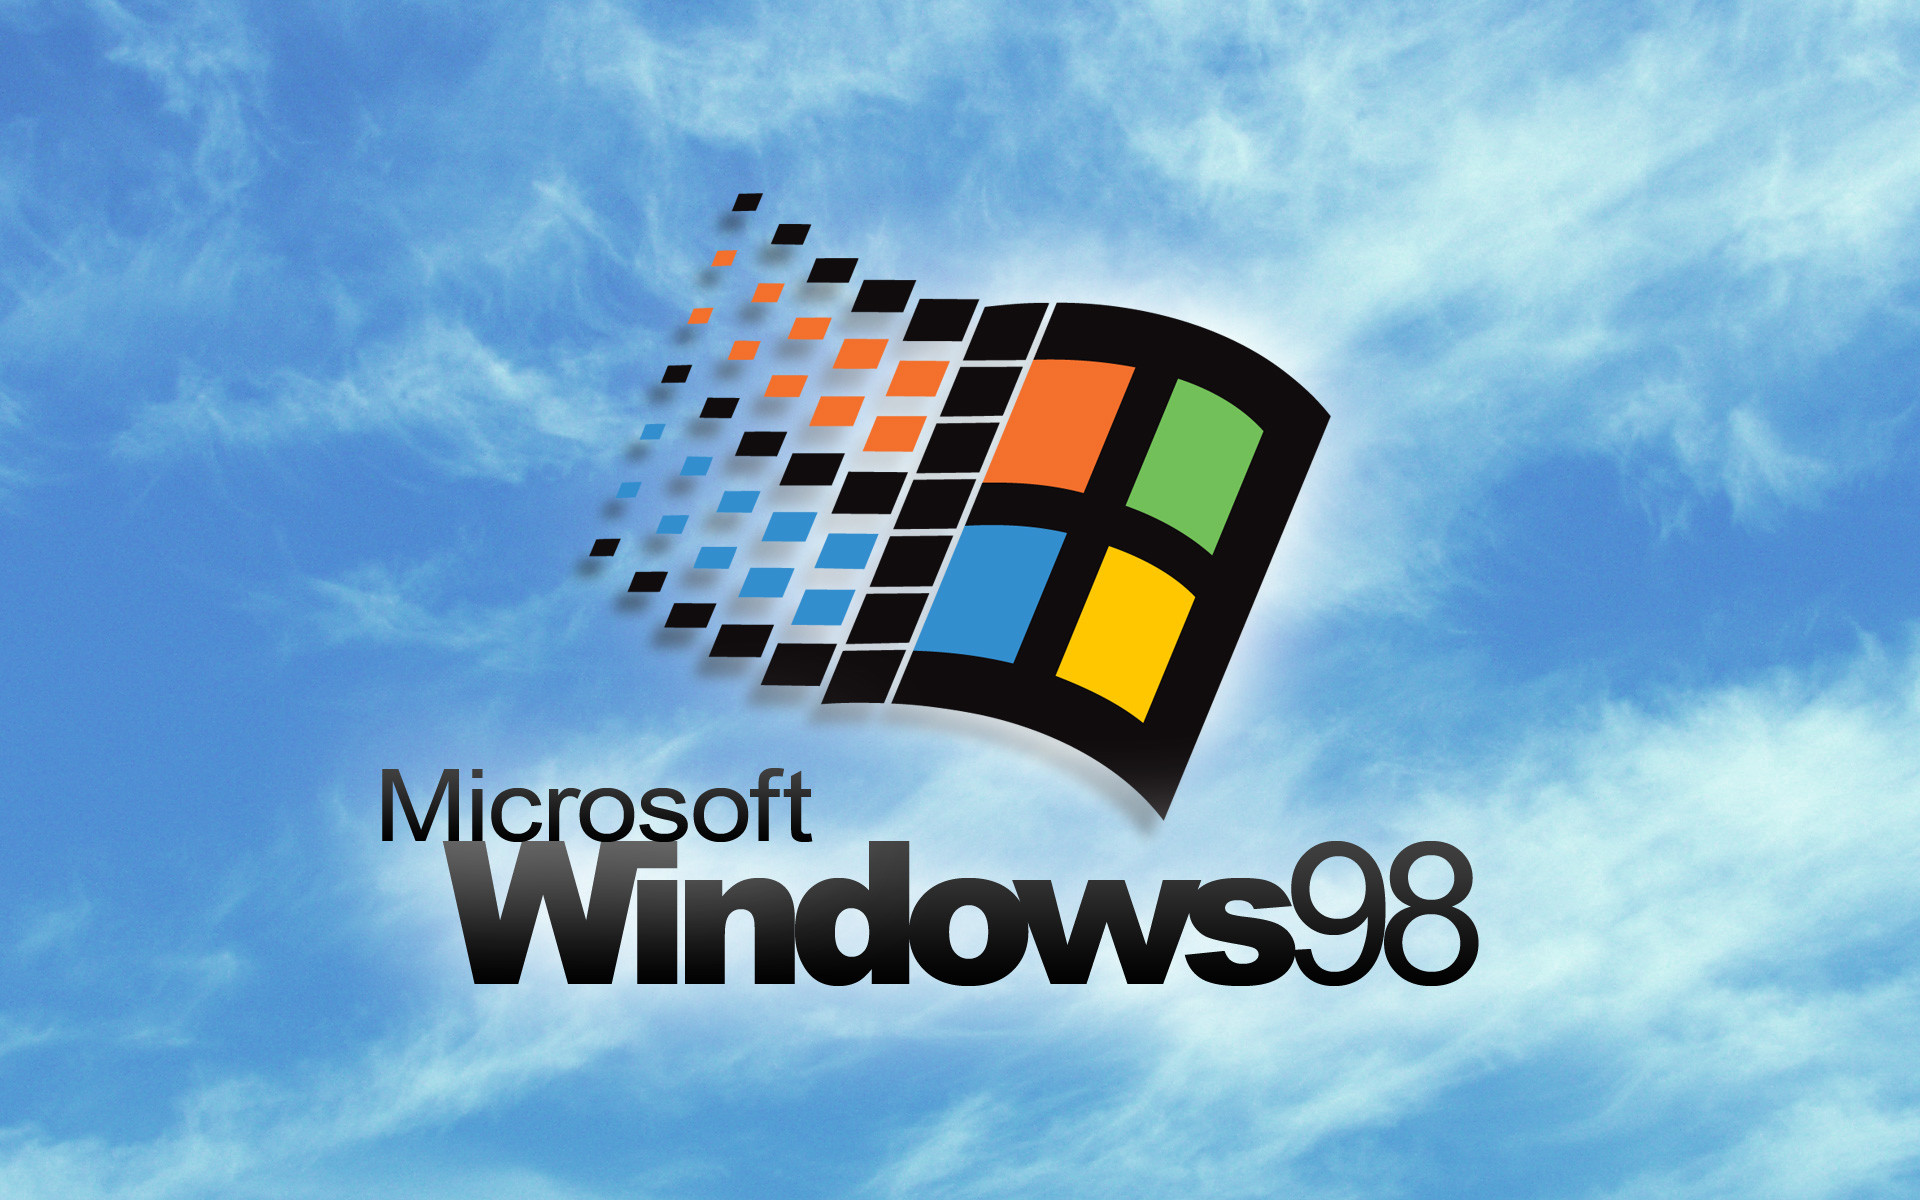 Windows 98 loading screen wallpaper